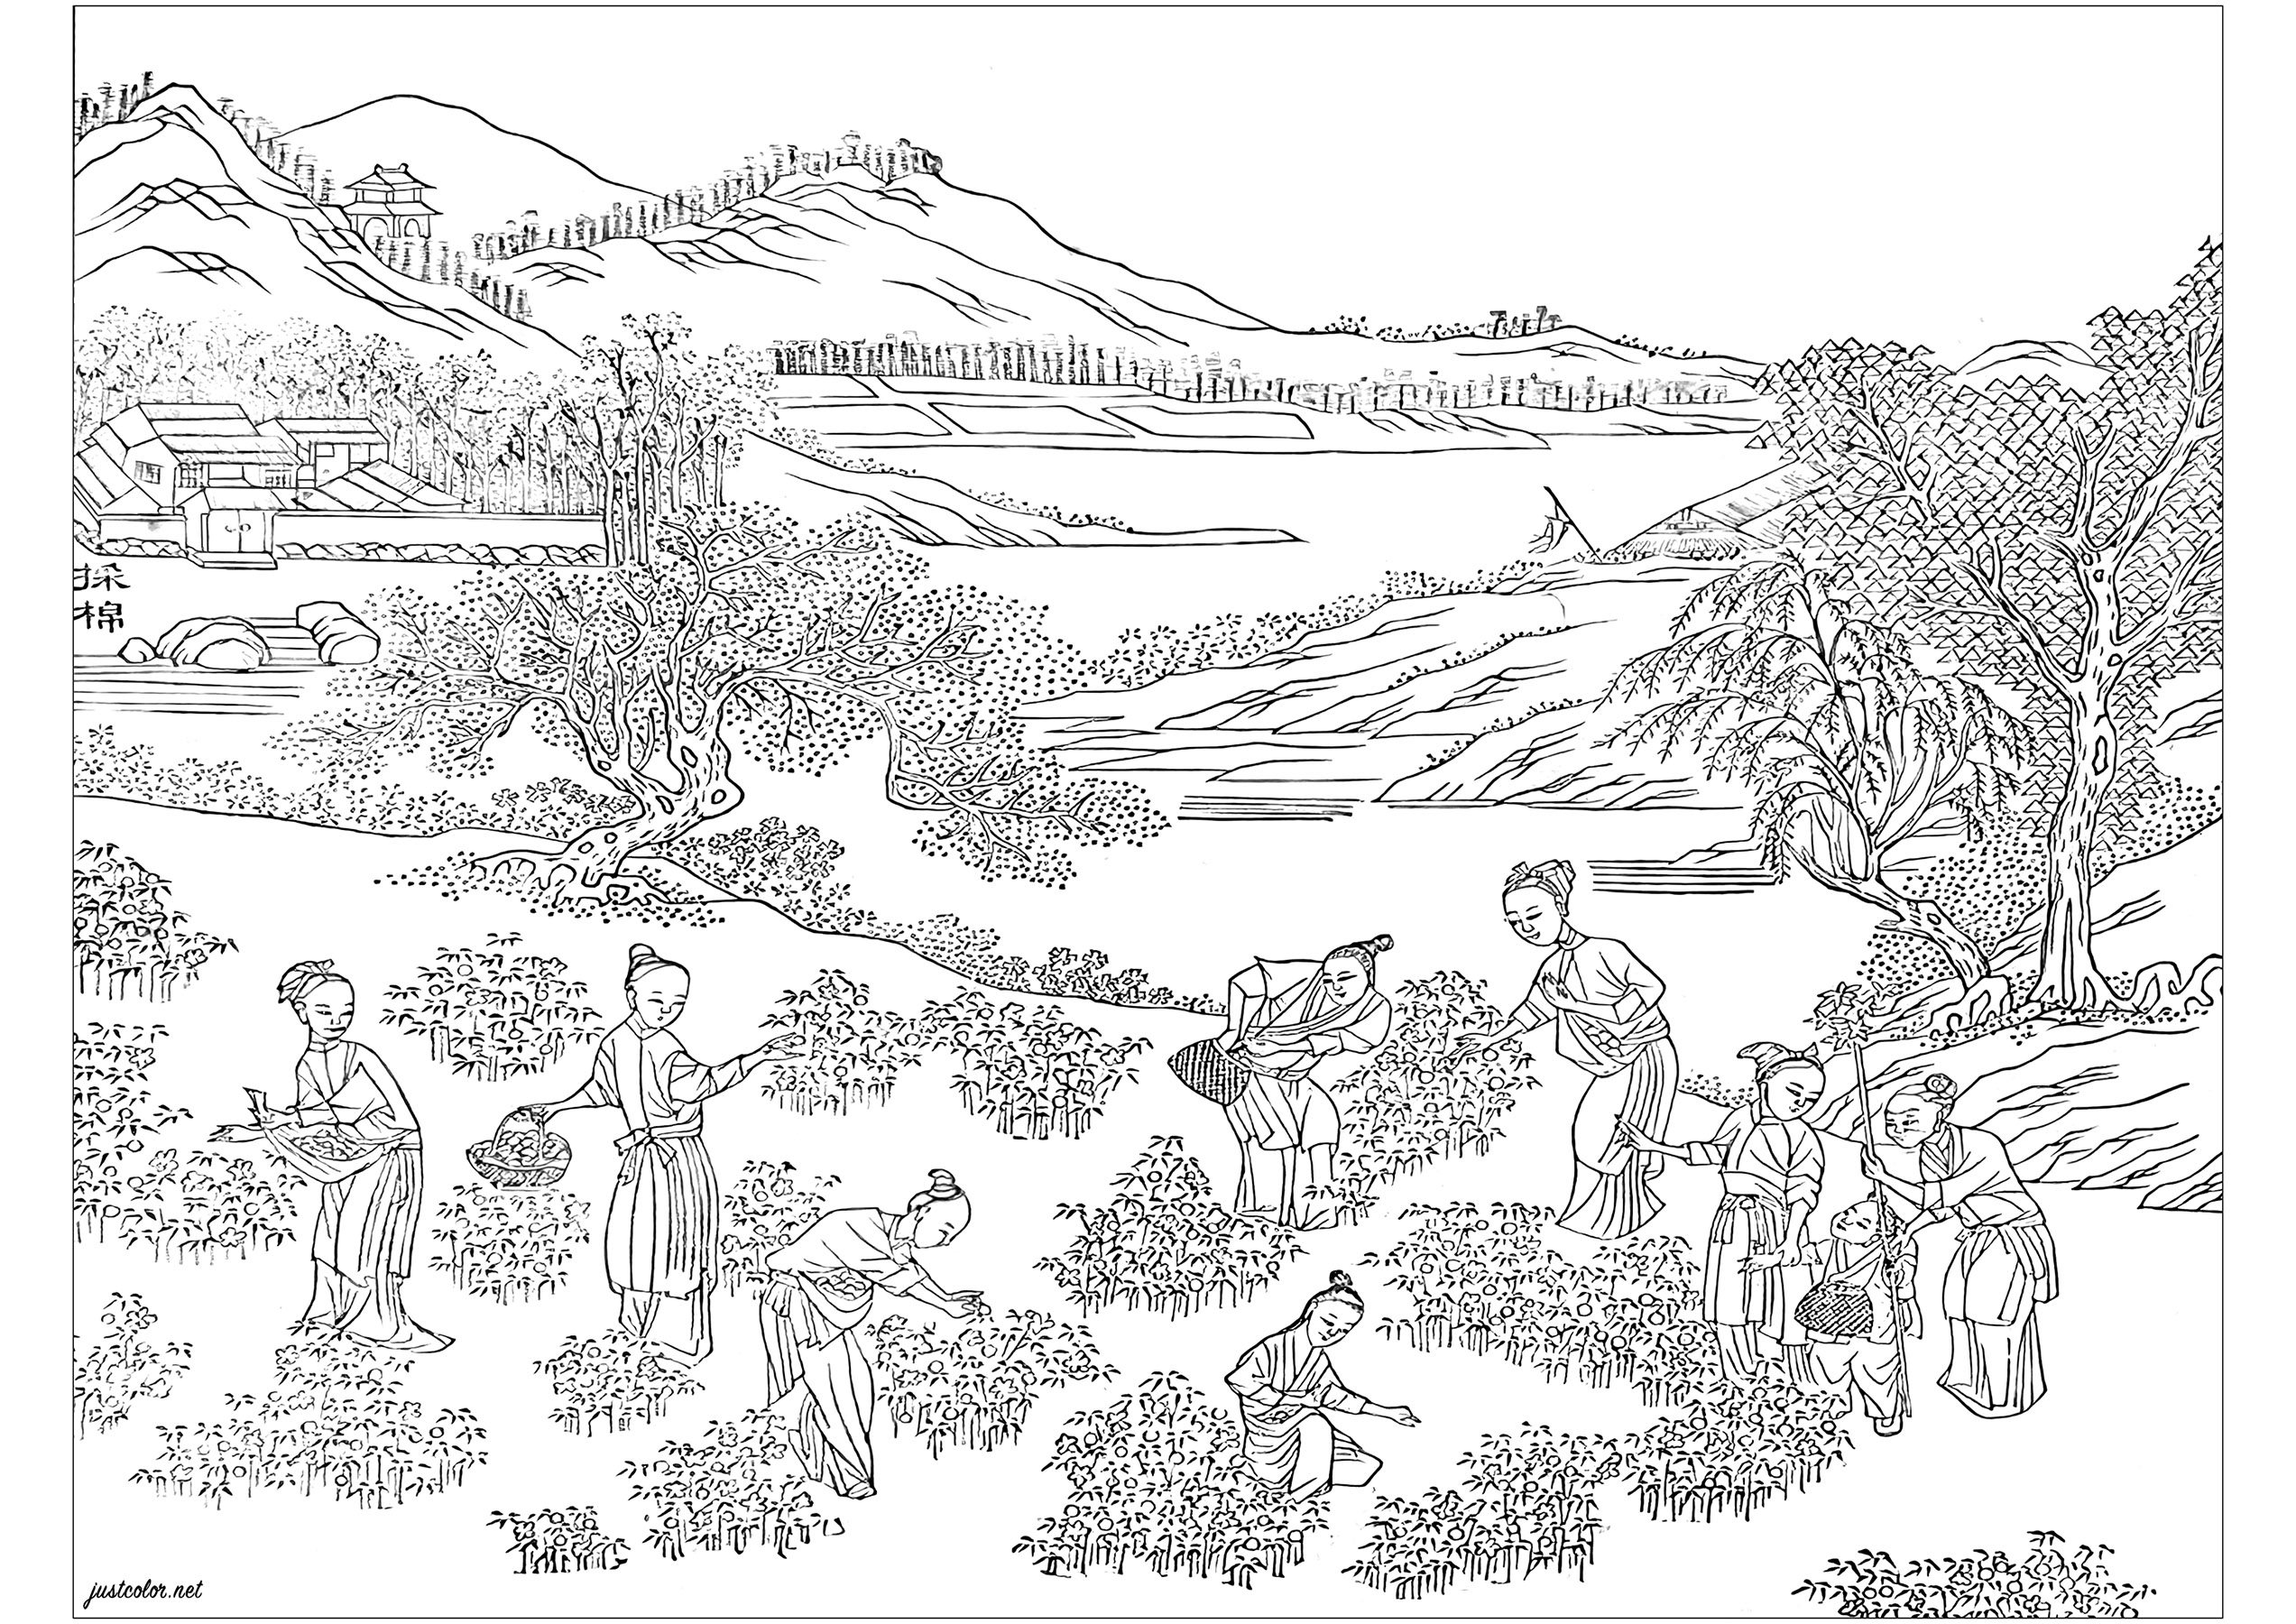 Coloração criada a partir de uma página ilustrada do álbum 'Images illustrant une production de coton' (1765). Este álbum foi produzido para promover as mais recentes tecnologias de cultivo do algodão e de produção têxtil na China do século XVIII. O livro encontra-se em exposição na Biblioteca Chester Beatty, em Dublin, Irlanda.